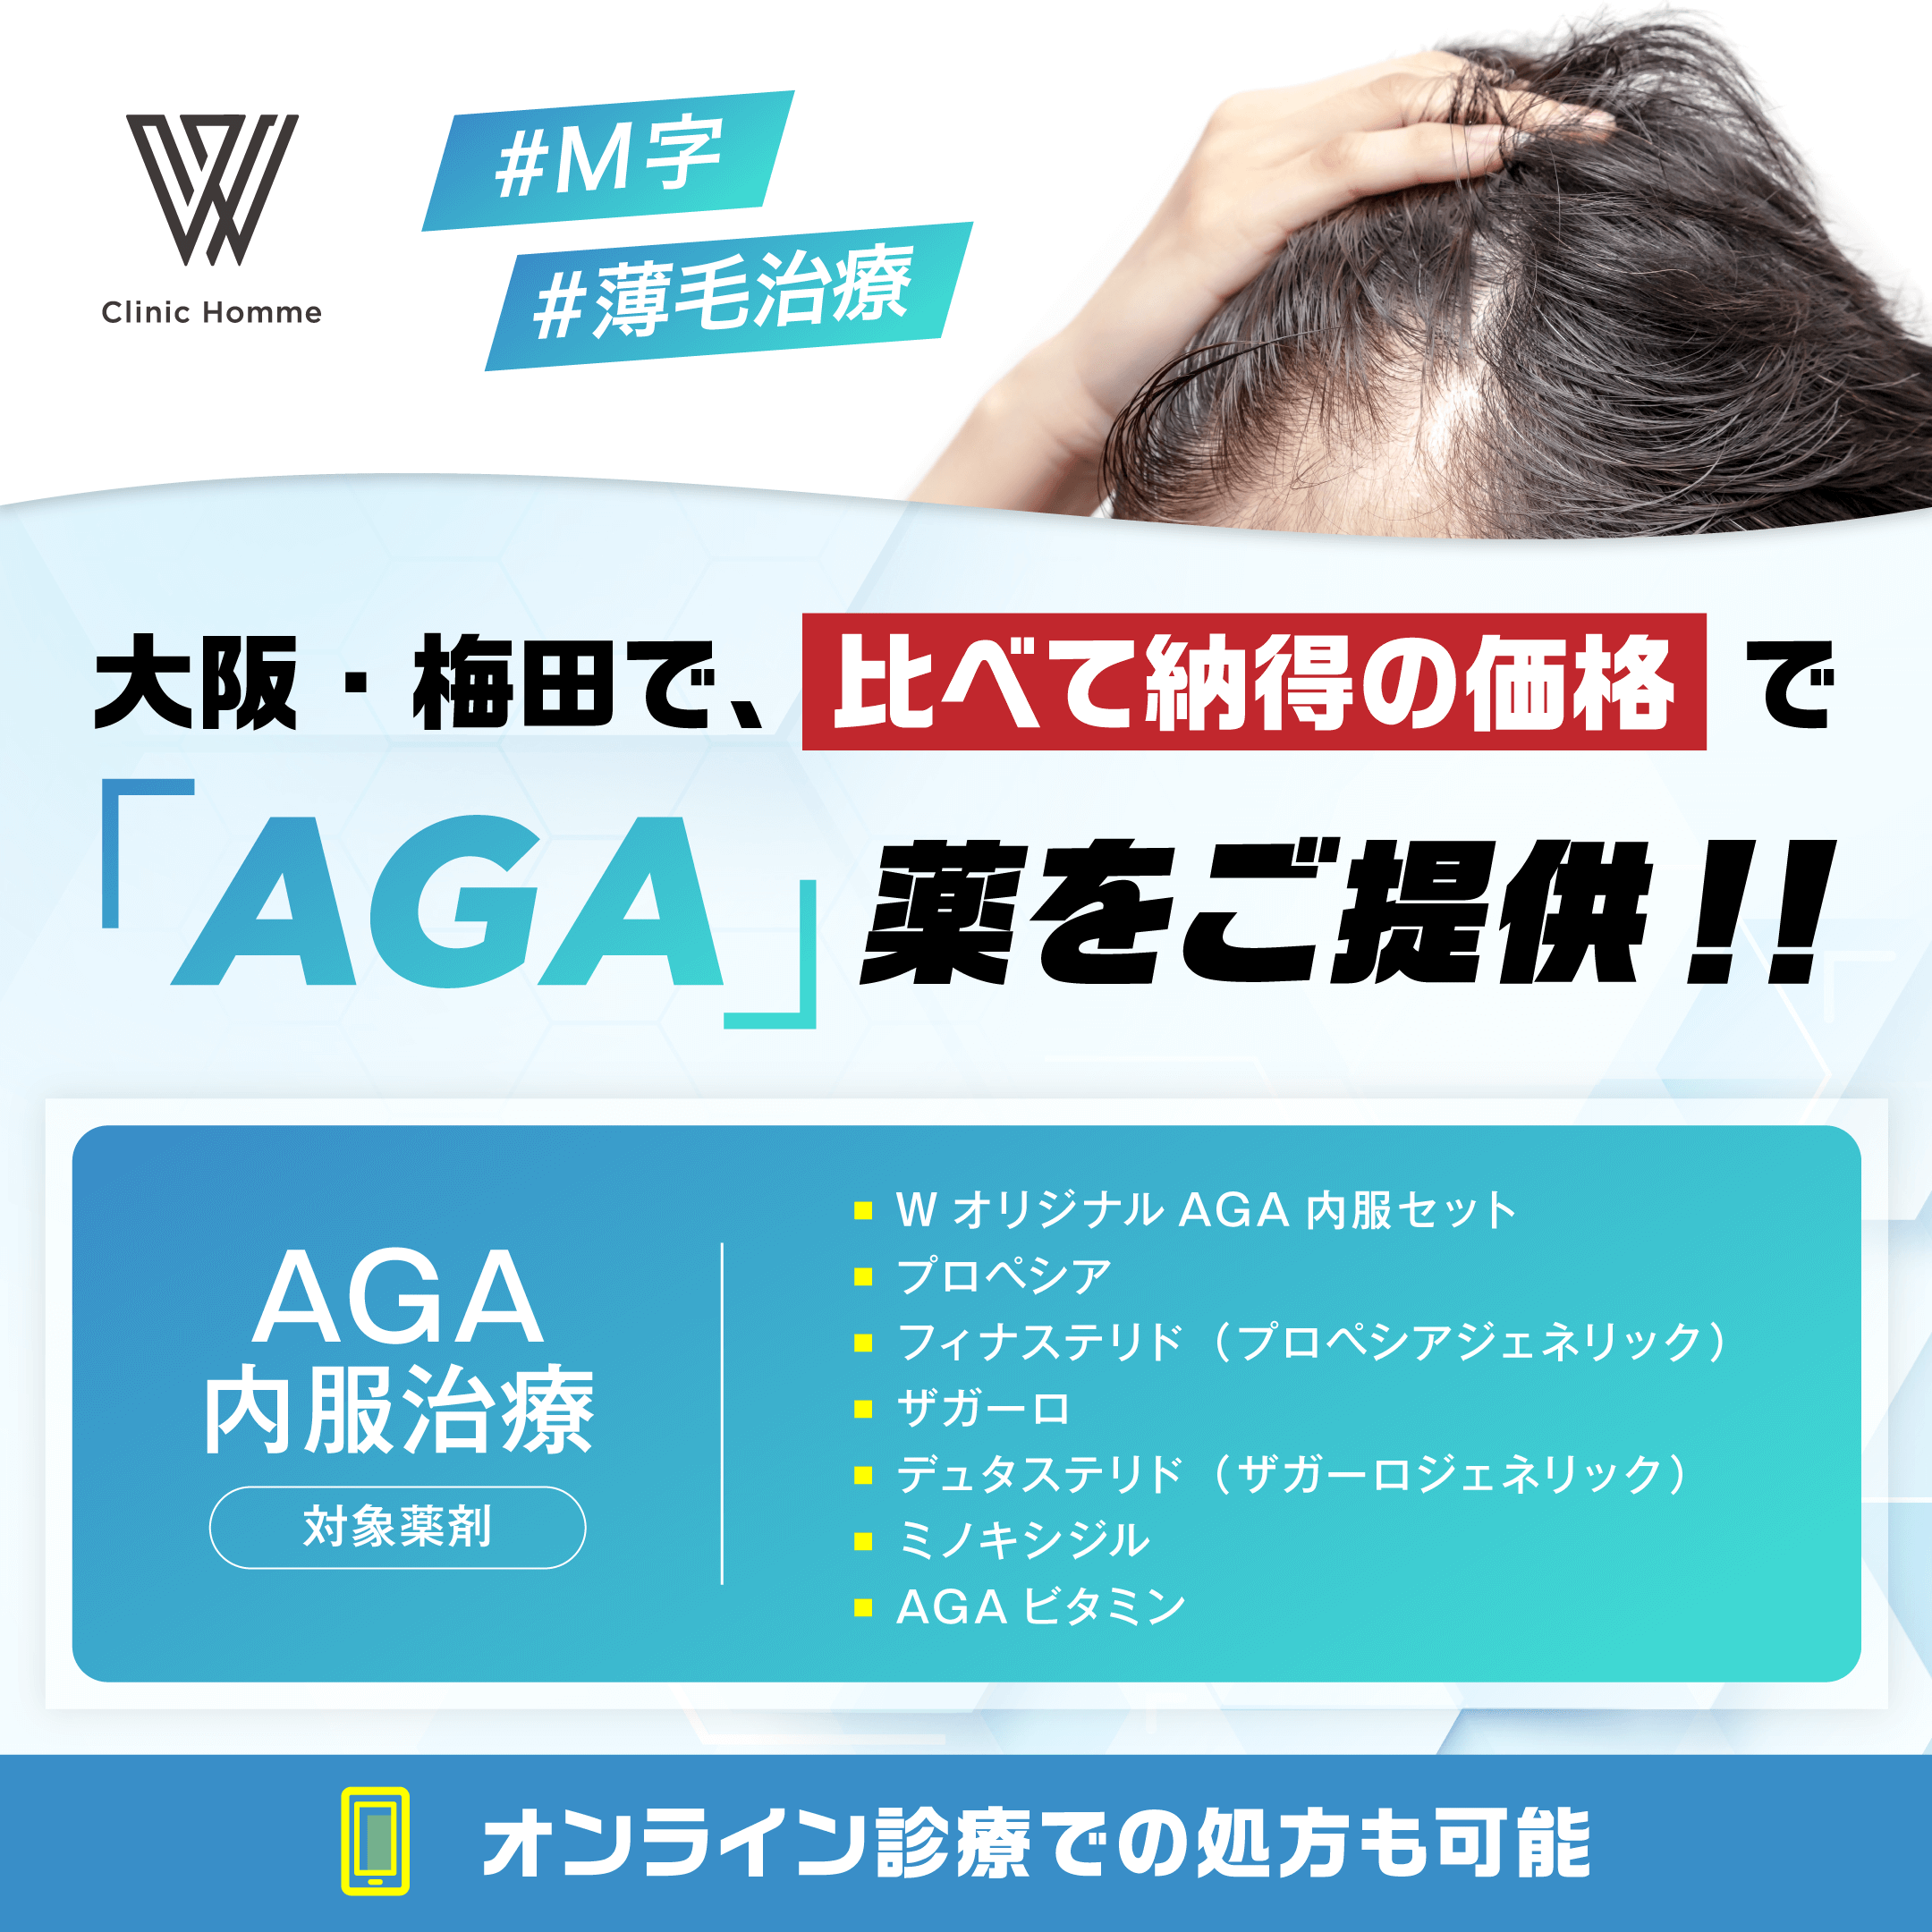 大阪・梅田で比べて納得の価格でAGA薬をご提供！